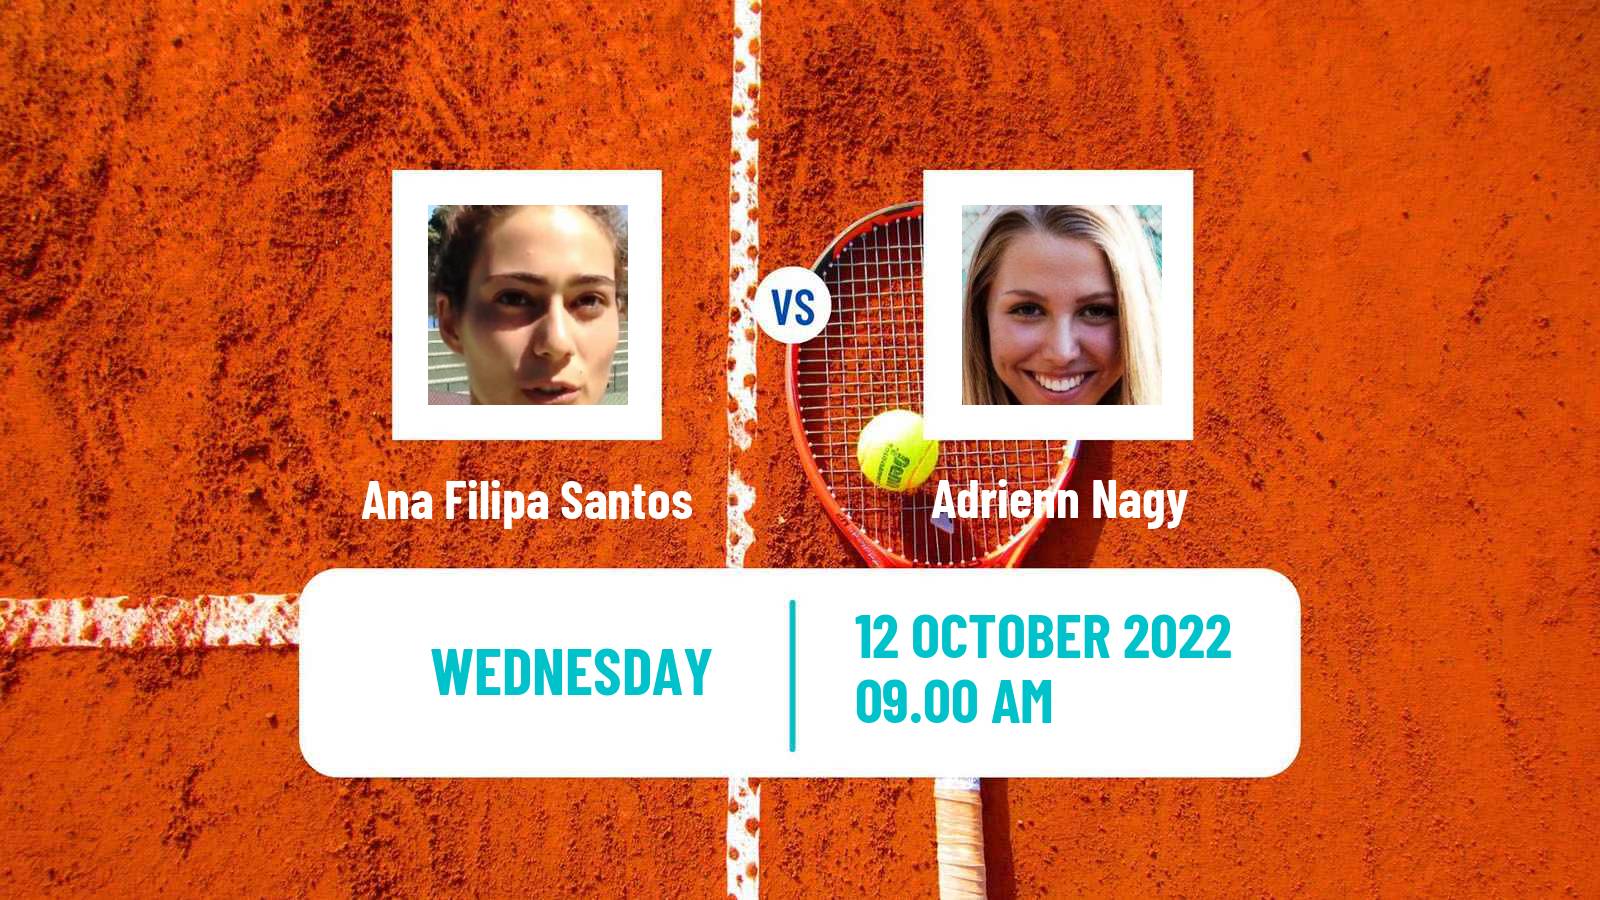 Tennis ITF Tournaments Ana Filipa Santos - Adrienn Nagy